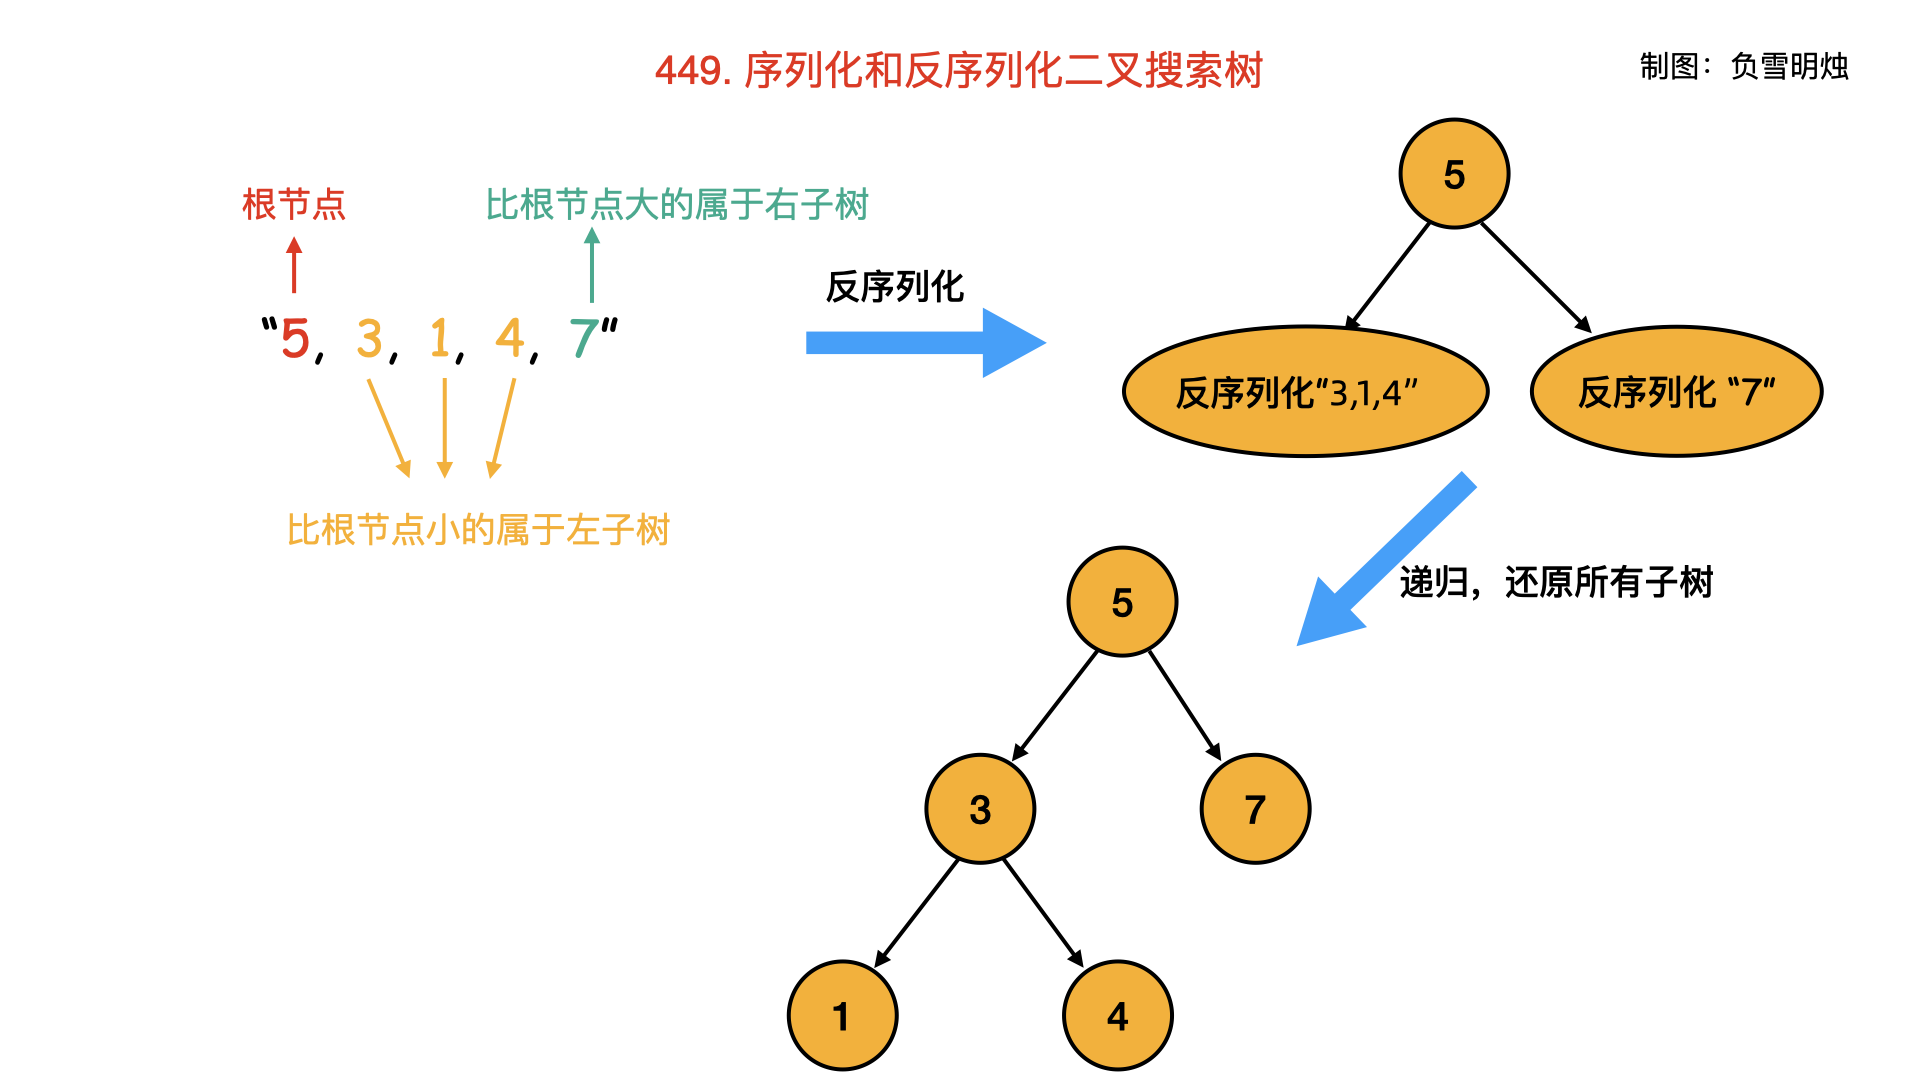 449. 序列化和反序列化二叉搜索树.003.png